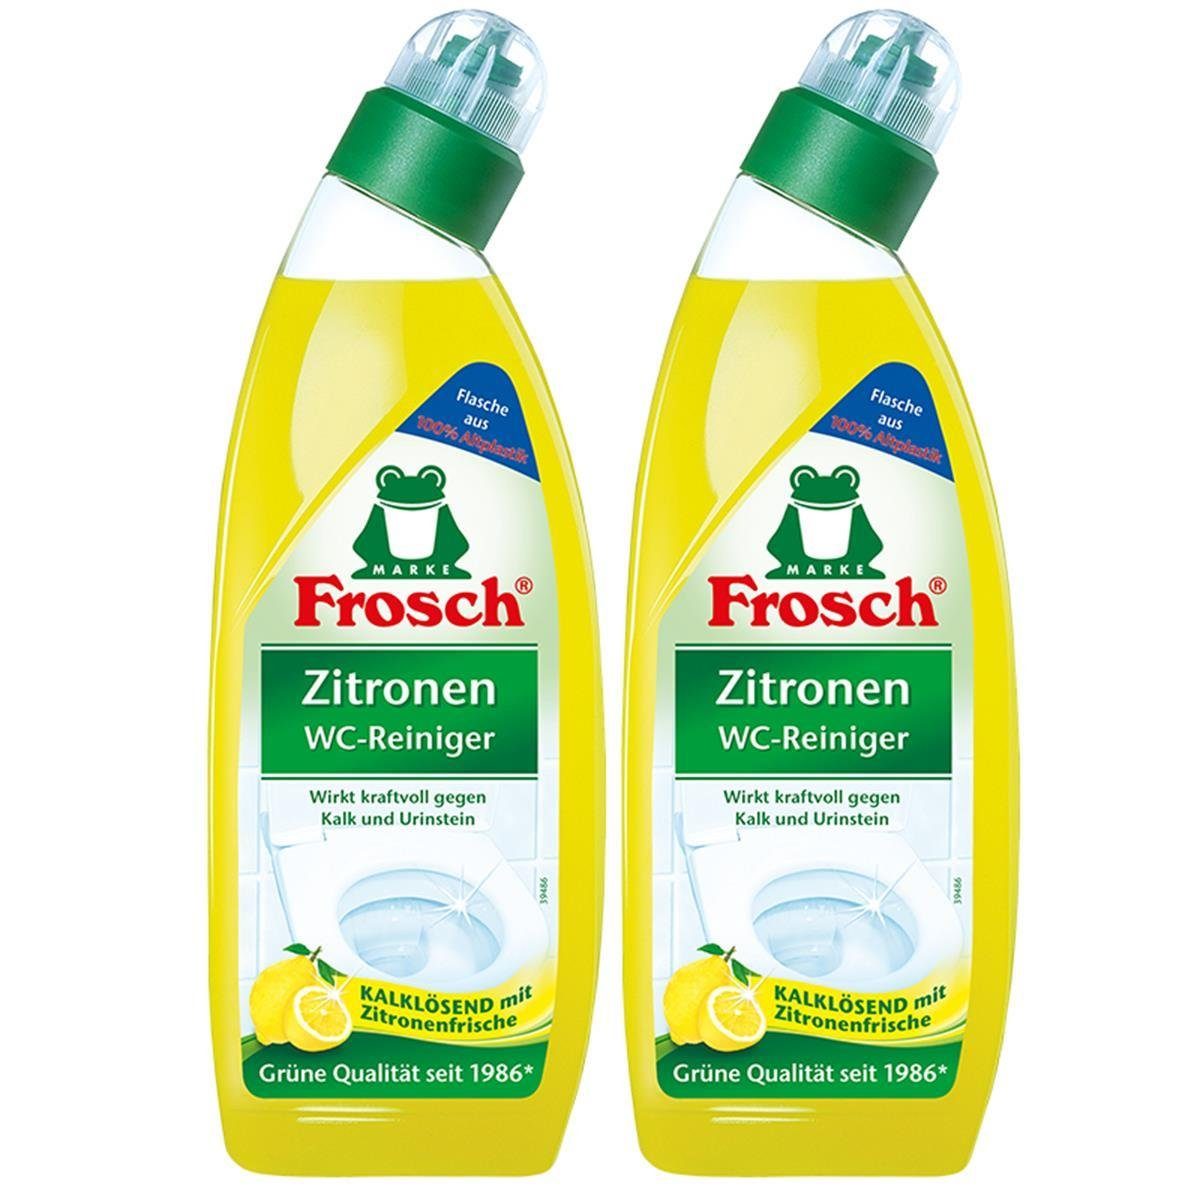 FROSCH Zitrone WC-Reiniger mit WC-Reiniger Frosch ml 2x Zitronen 750 - Kalklösend